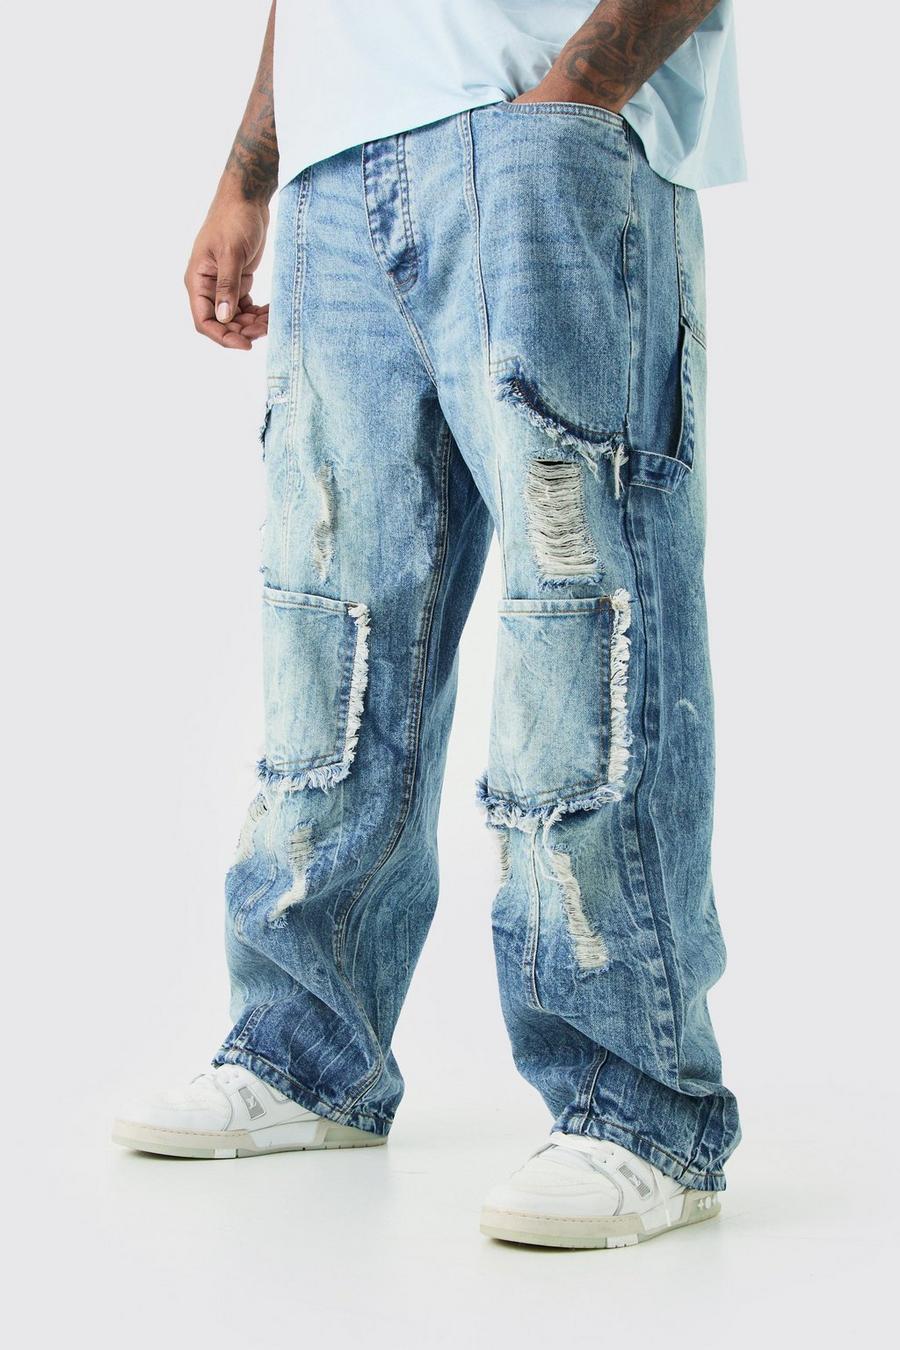 Jeans Cargo Plus Size rilassati in denim rigido con strappi, Antique blue